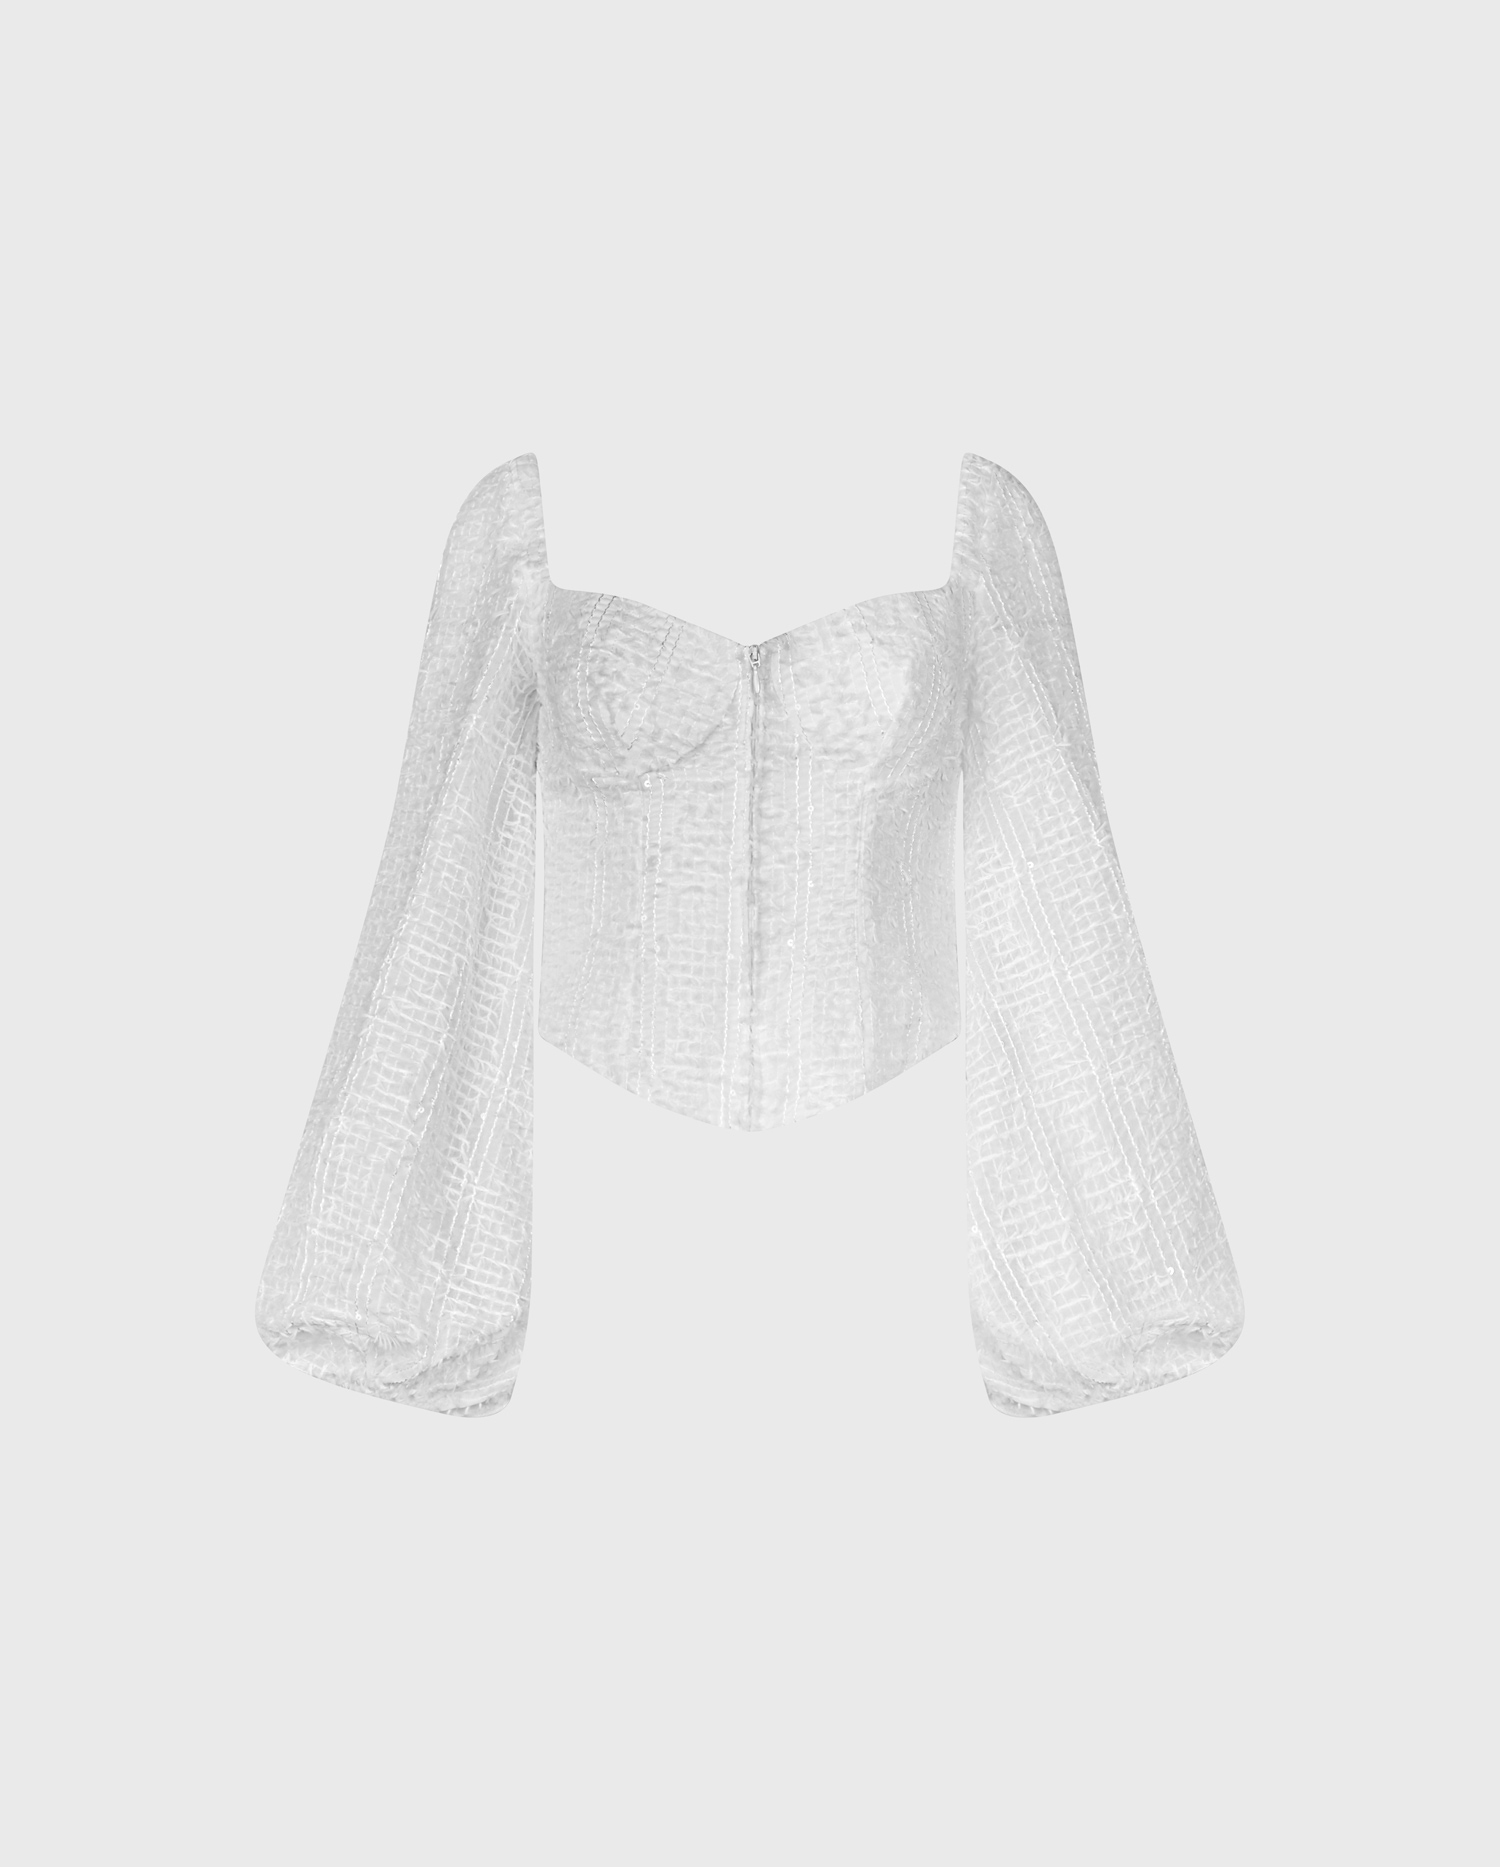 Découvrez la chemise corsetée à manches ballons texturées blanche de PLUME